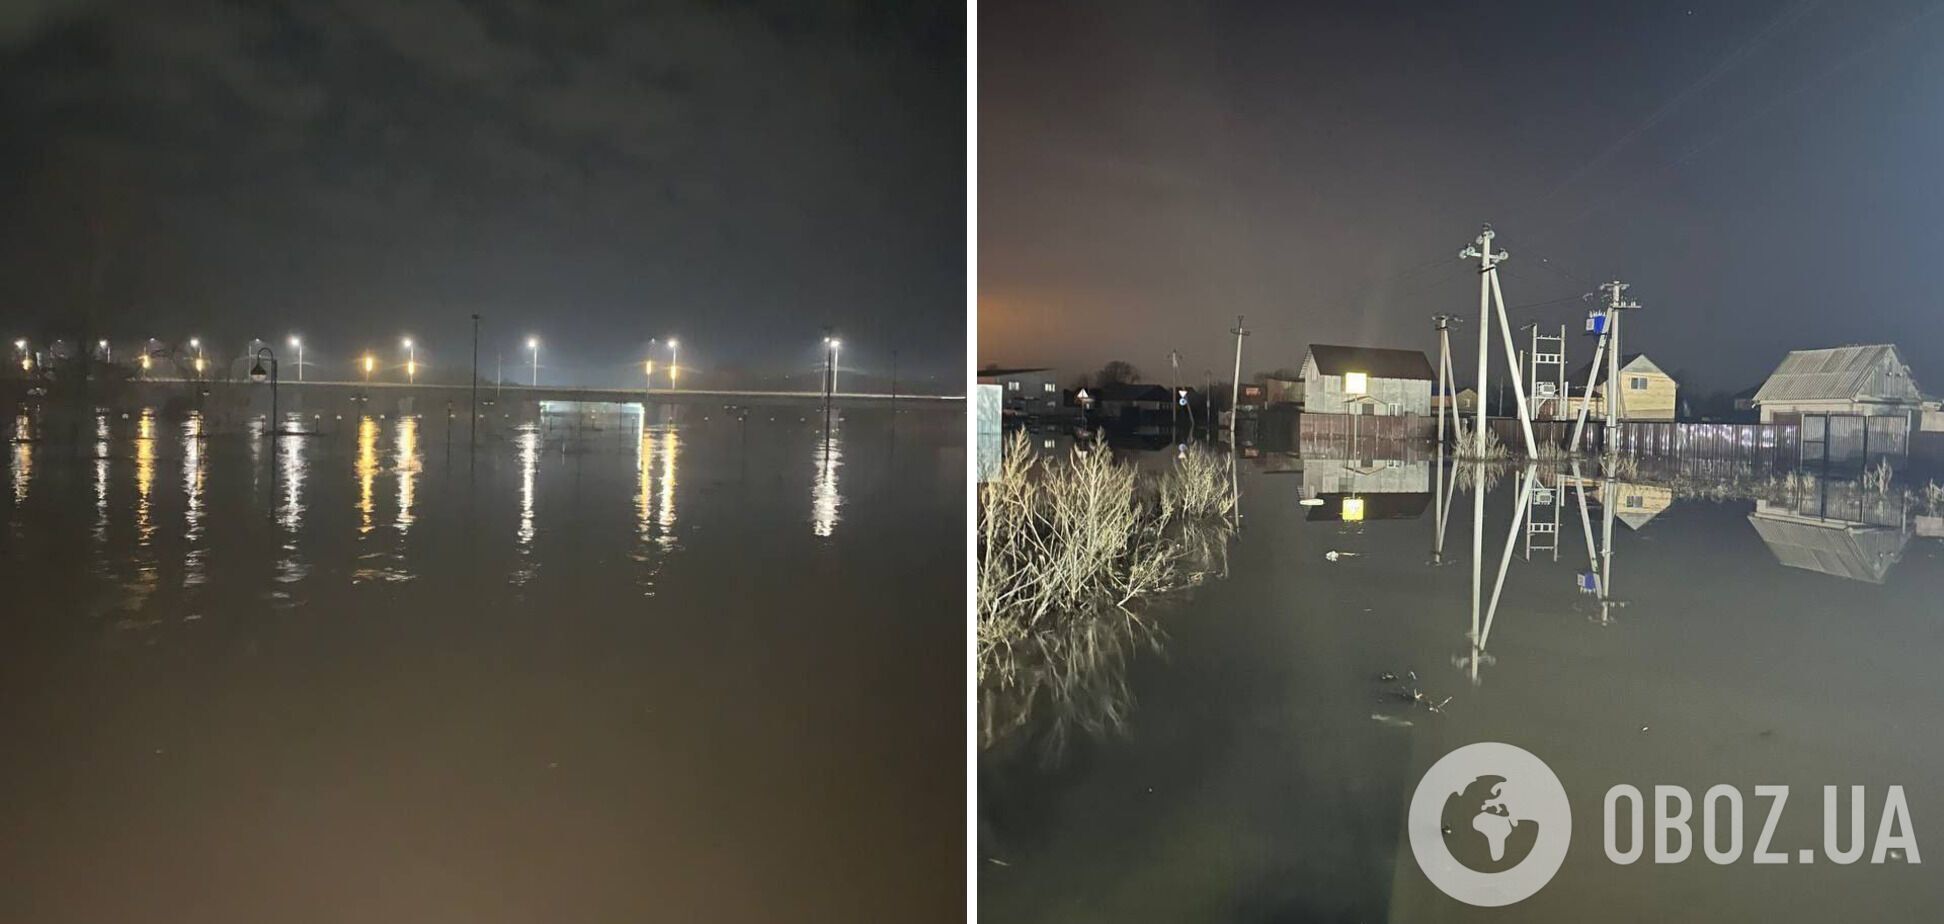 Вода из Орской дамбы начала затапливать Оренбург: власти призывают жителей эвакуироваться. Видео